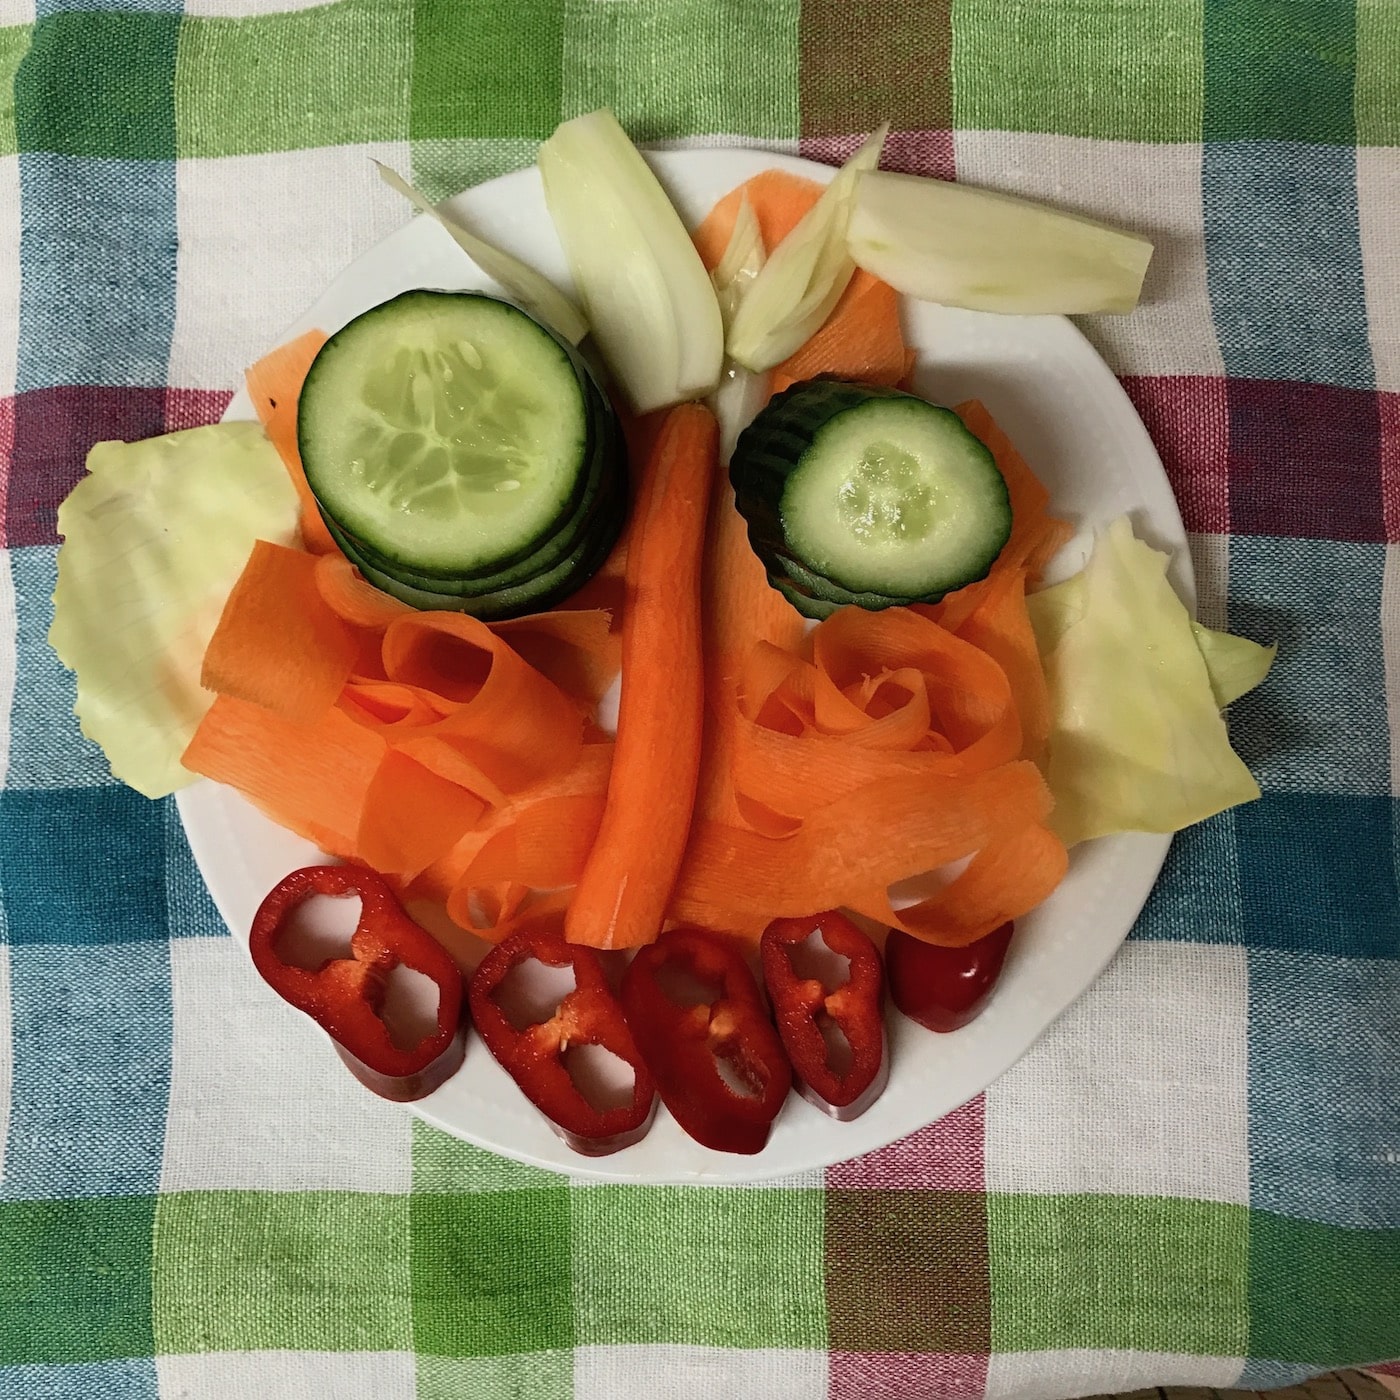 Gesicht aus Gemüse wie Gurken, Möhren, Paprika auf einem Teller angerichtet.